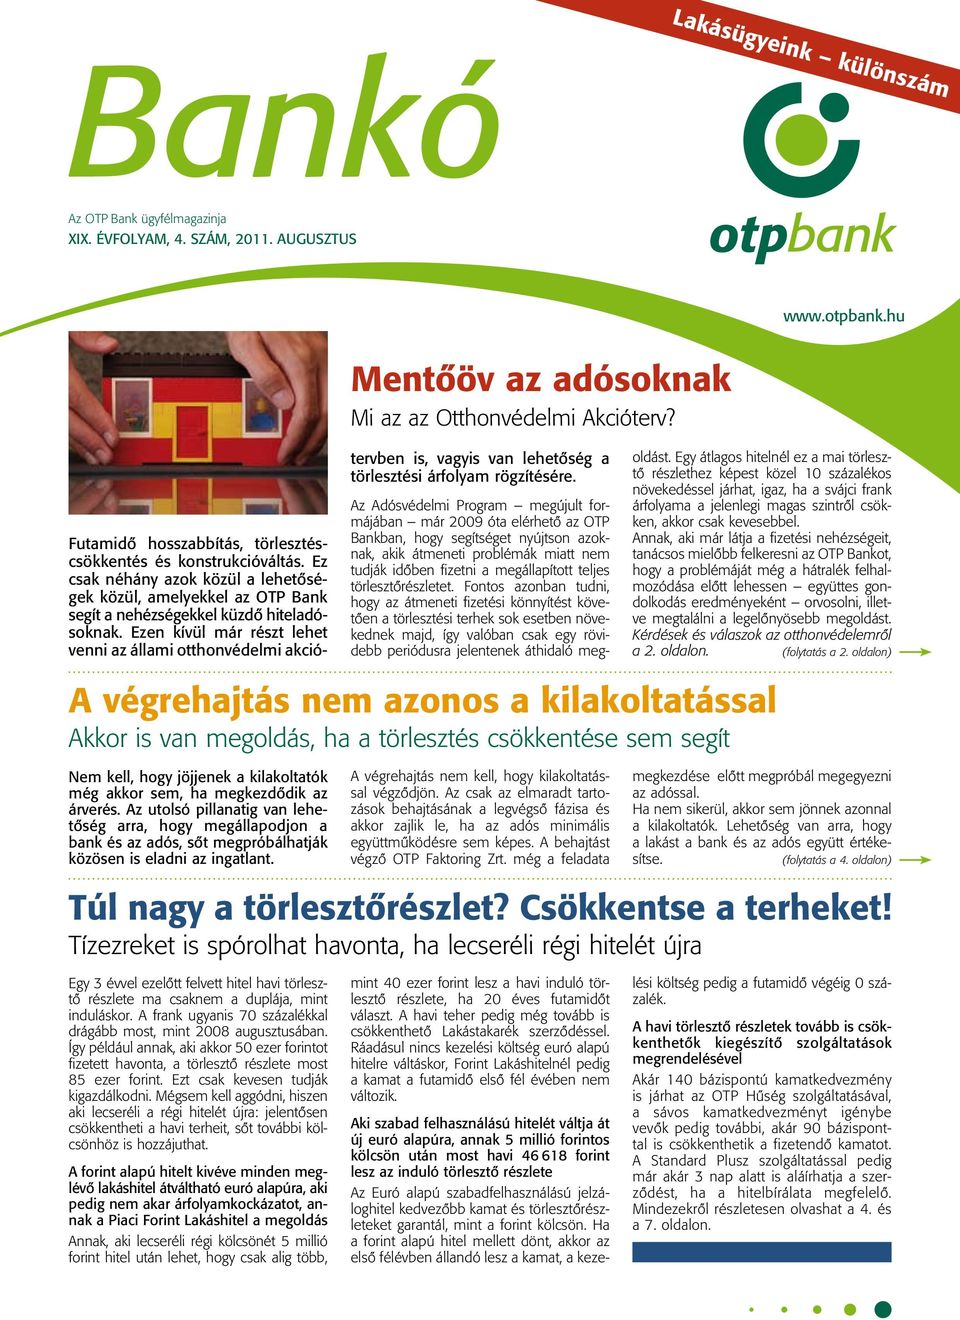 Bankó Az OTP Bank ügyfélmagazinja - PDF Ingyenes letöltés